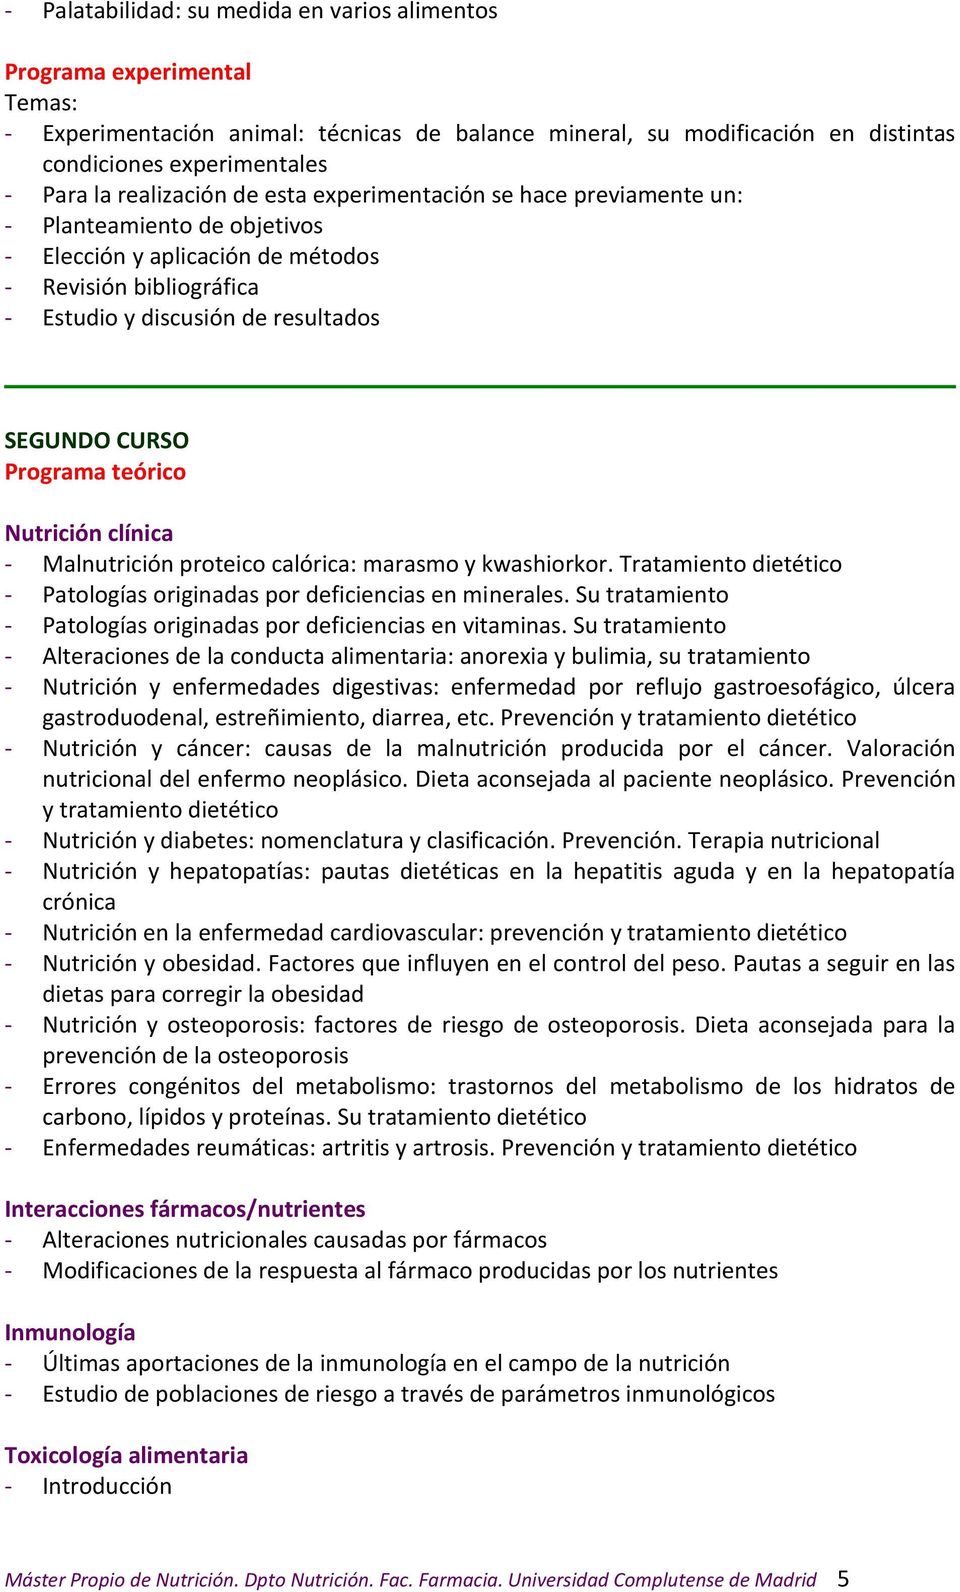 Programa teórico Nutrición clínica - Malnutrición proteico calórica: marasmo y kwashiorkor. Tratamiento dietético - Patologías originadas por deficiencias en minerales.